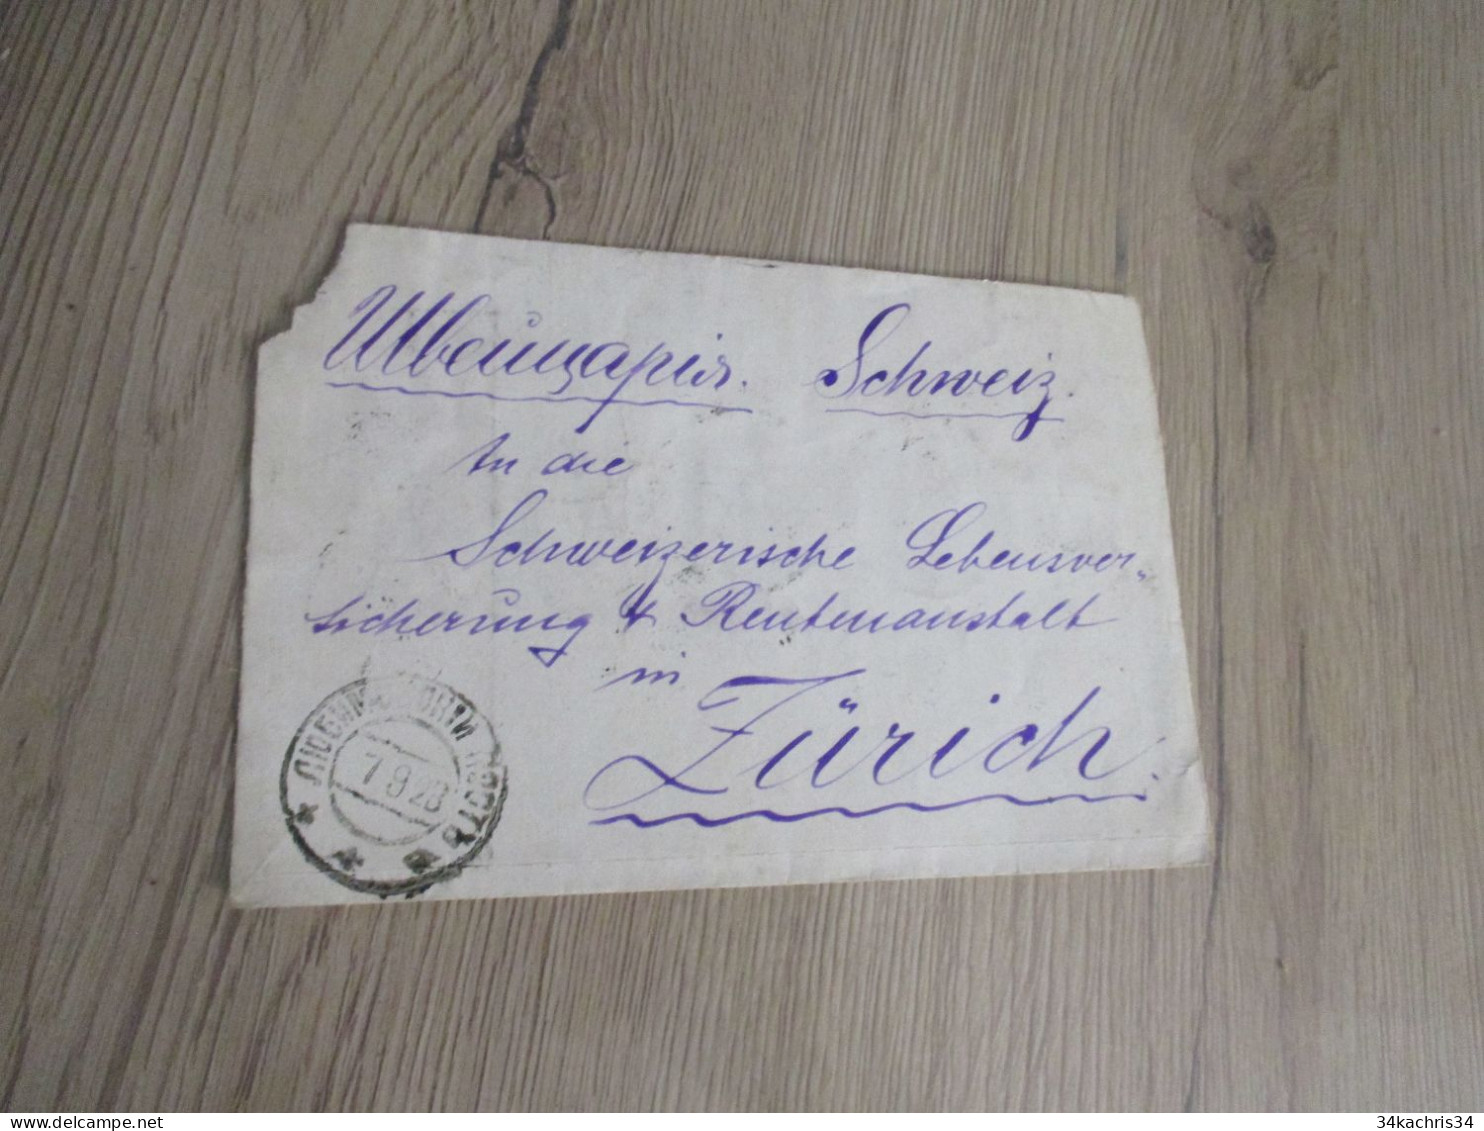 Lettre Russie Russia 9 Stamp Surchargés P100P P200P 1928 Pour Zurich - Lettres & Documents